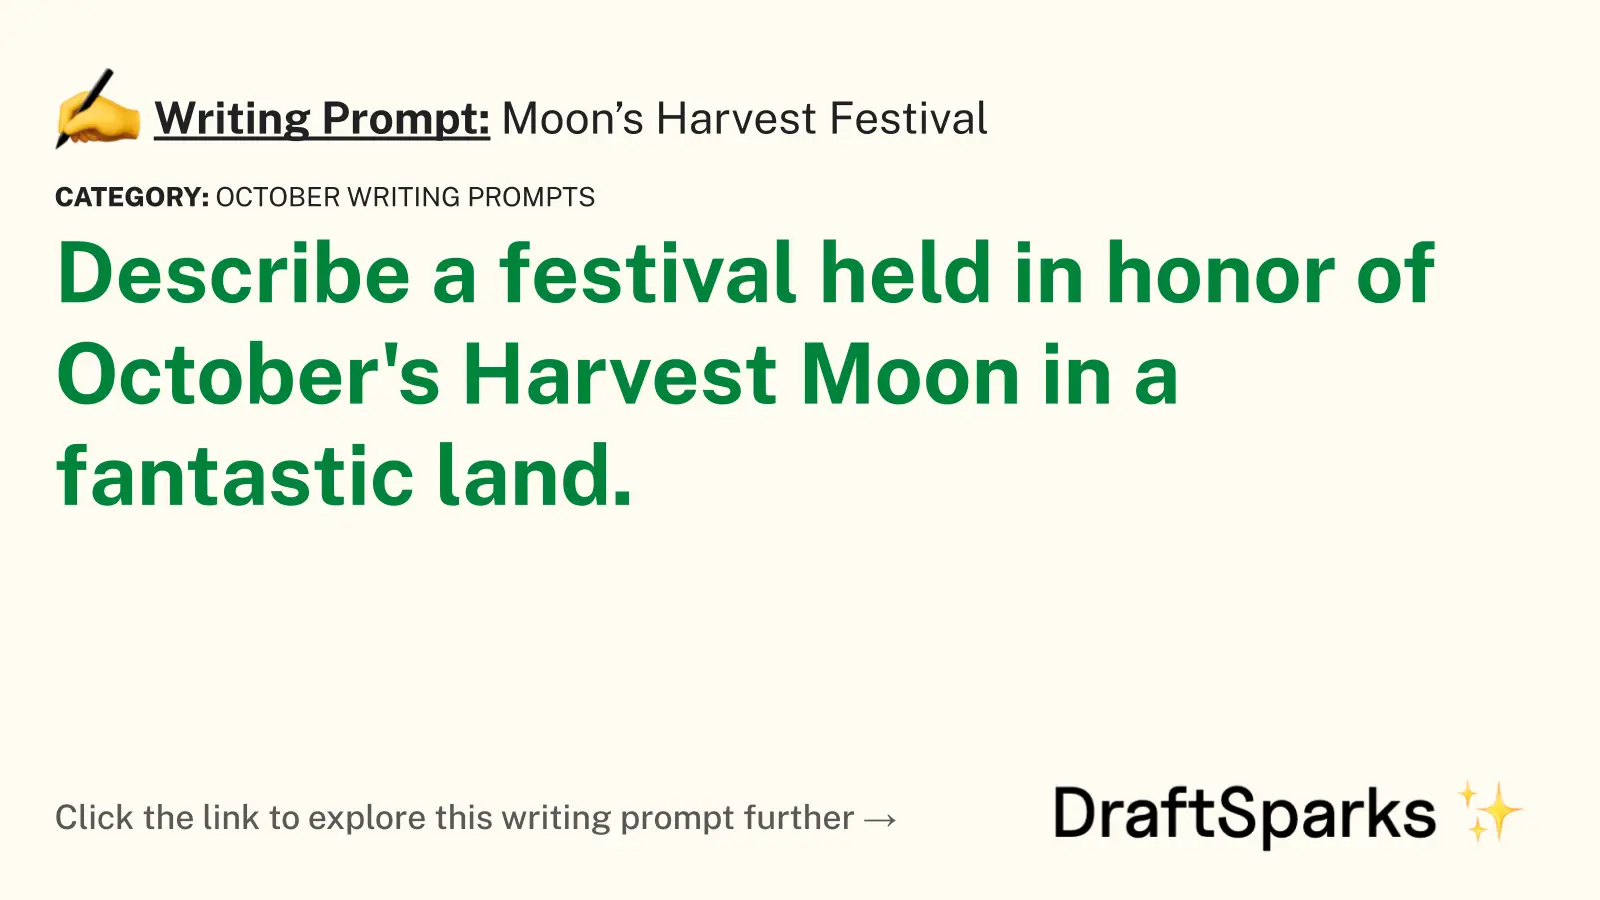 Moon’s Harvest Festival